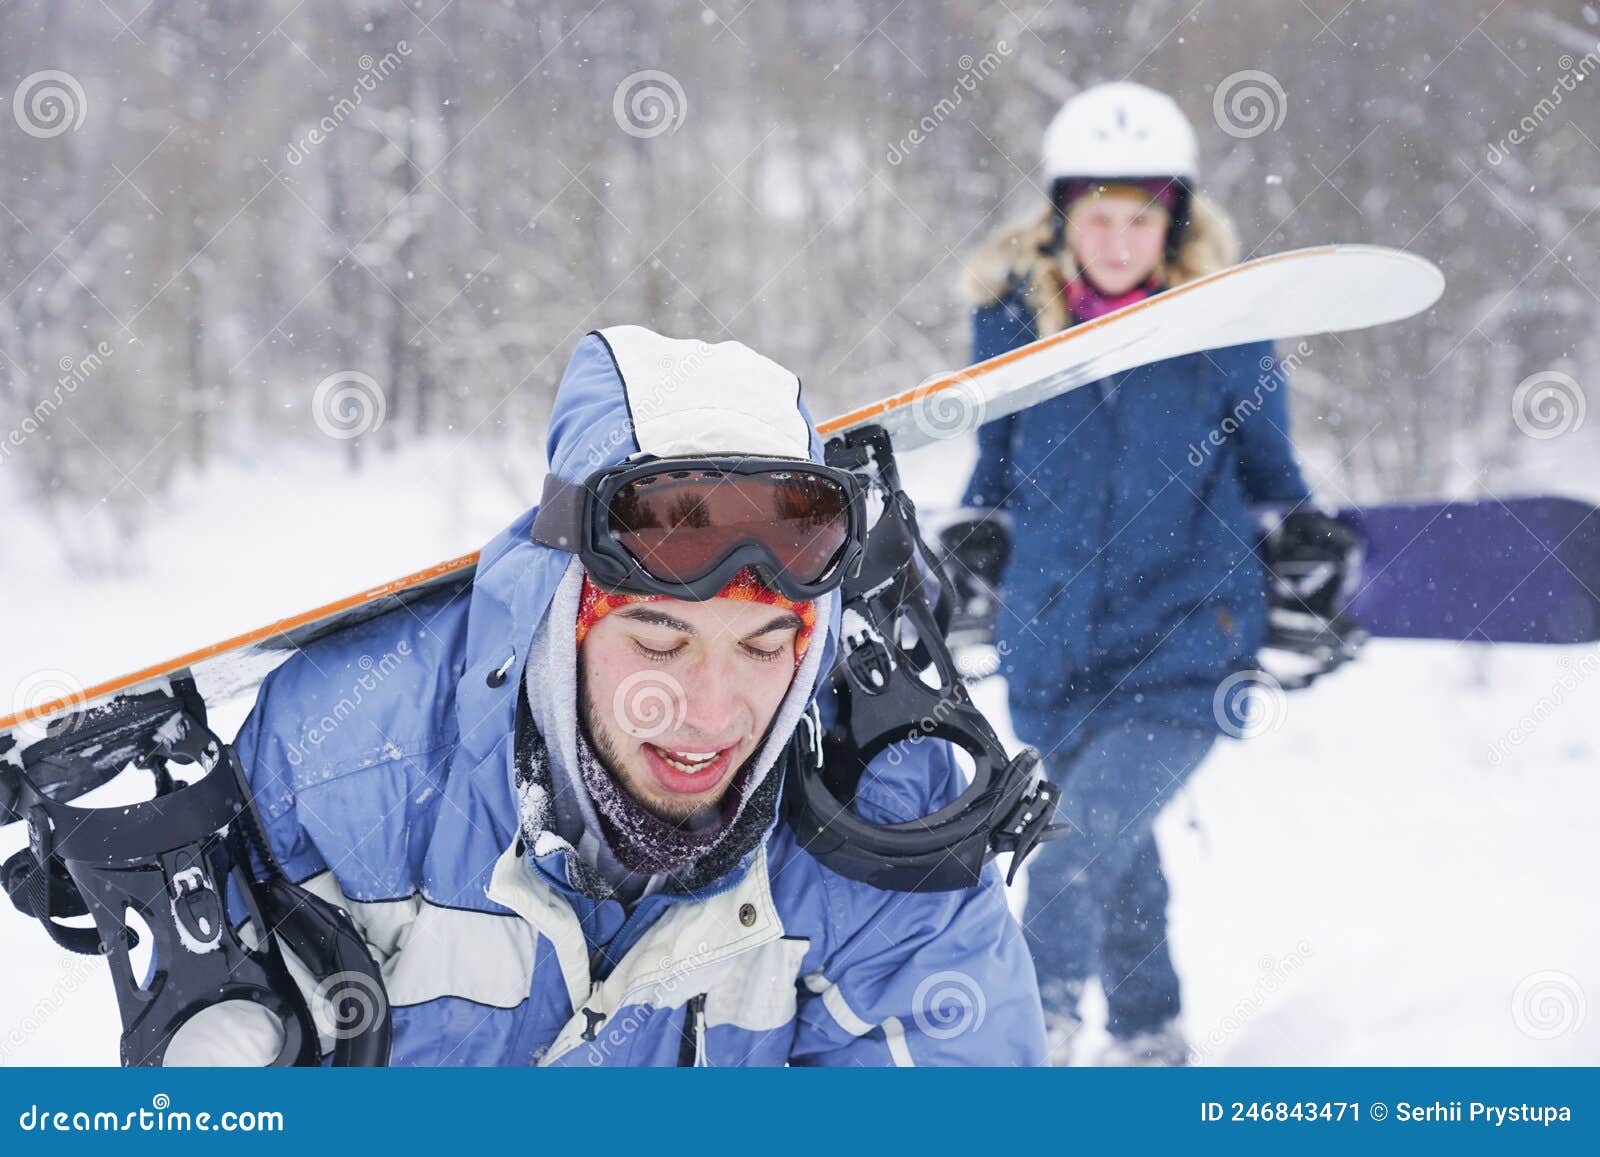 Y Una Chica Con Ropa De Snowboard Están Caminando Por La Pista De Esquí. Están Sosteniendo Una Tabla Nieve. Imagen de archivo - Imagen de tenencia, invierno: 246843471